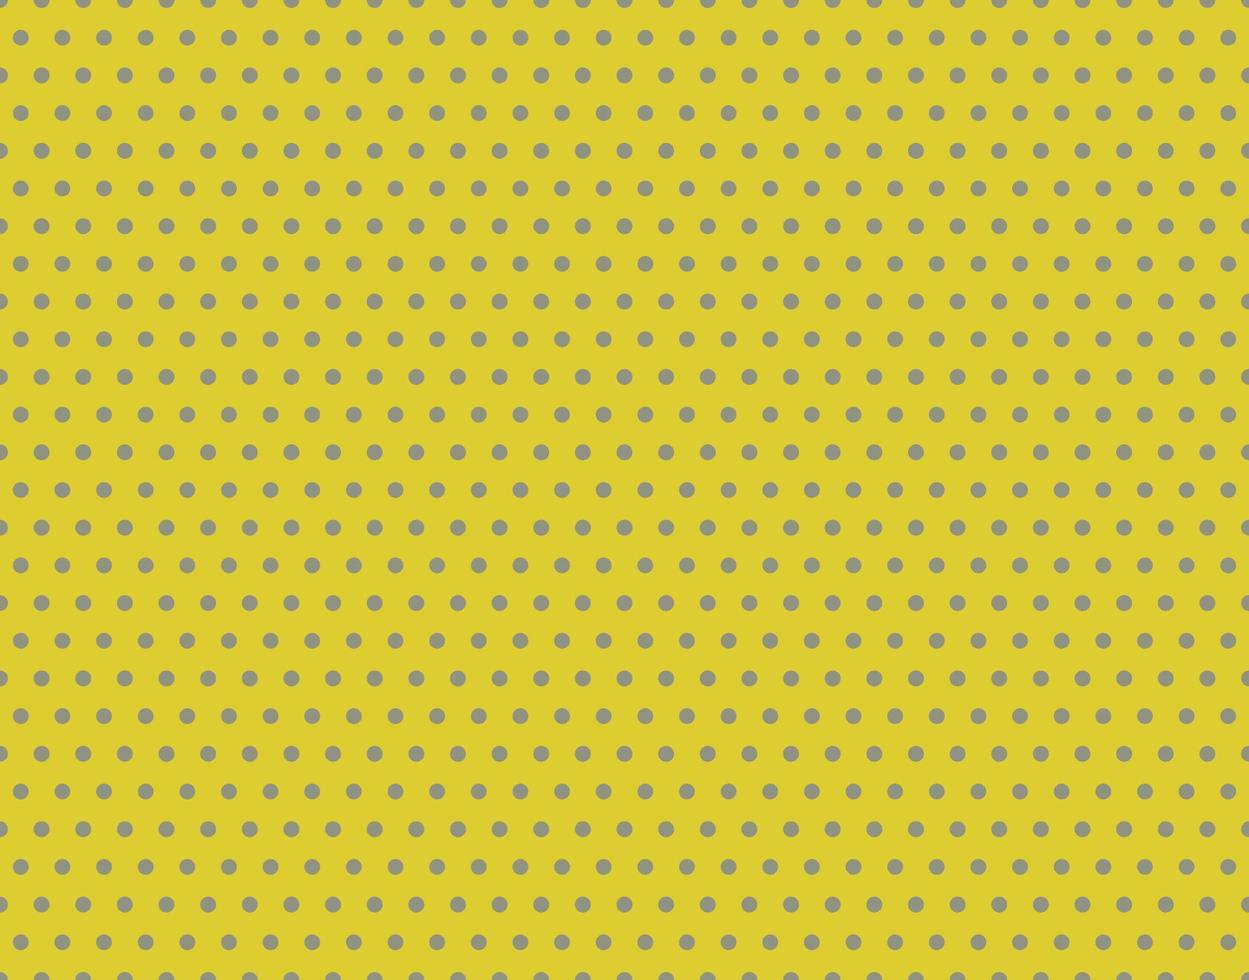 grå och gul polka punkt mönster. vektor bakgrund.